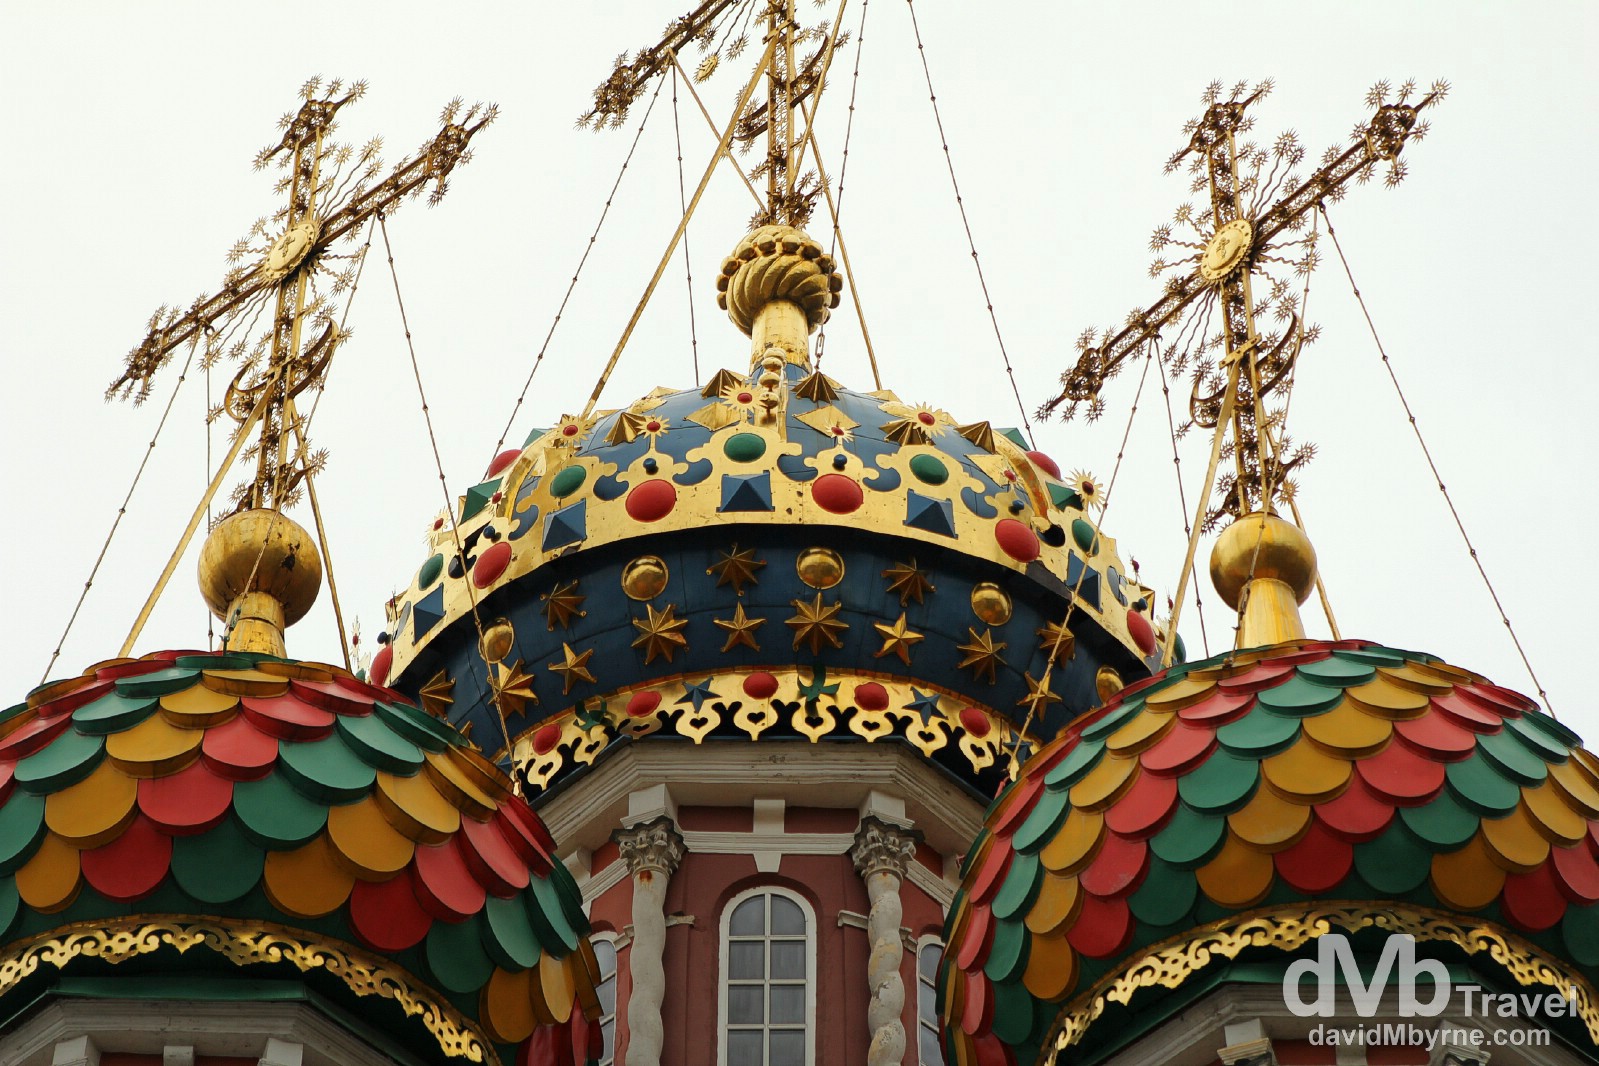 The decorative onion domes of Stroganov Church in Nizhny Novgorod, Russia. November 14th 2012.